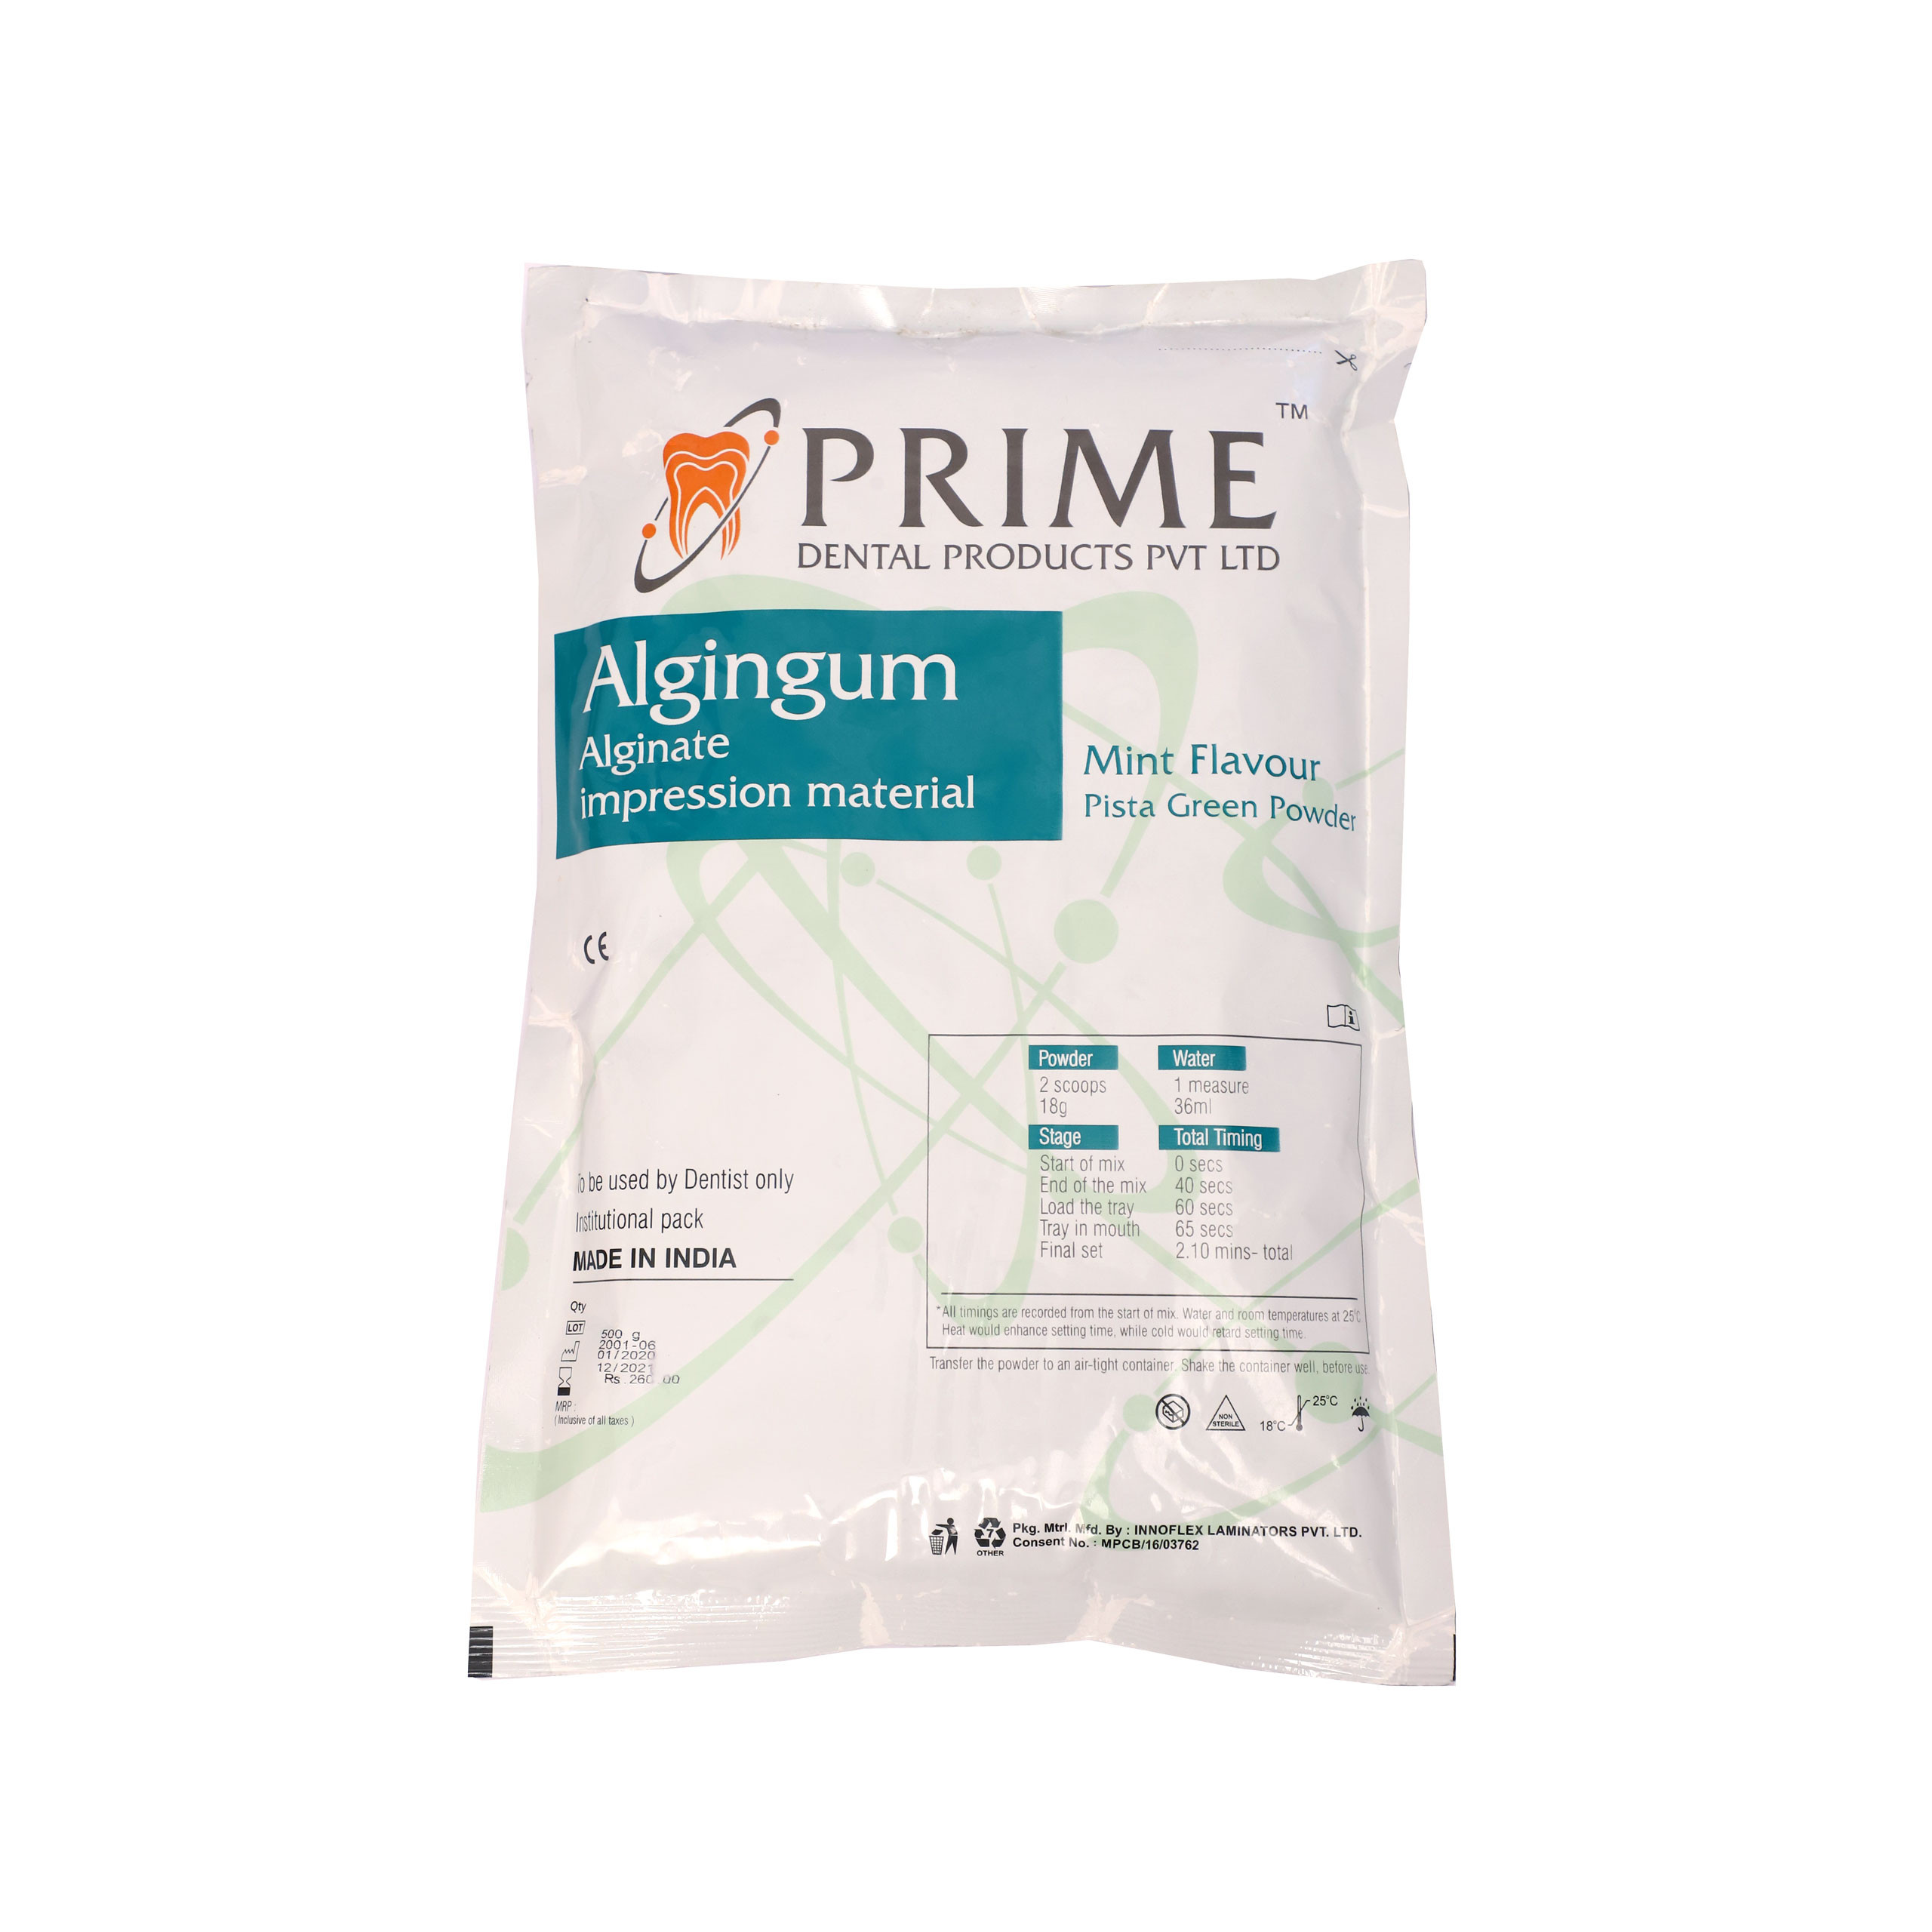 Prime Algingum